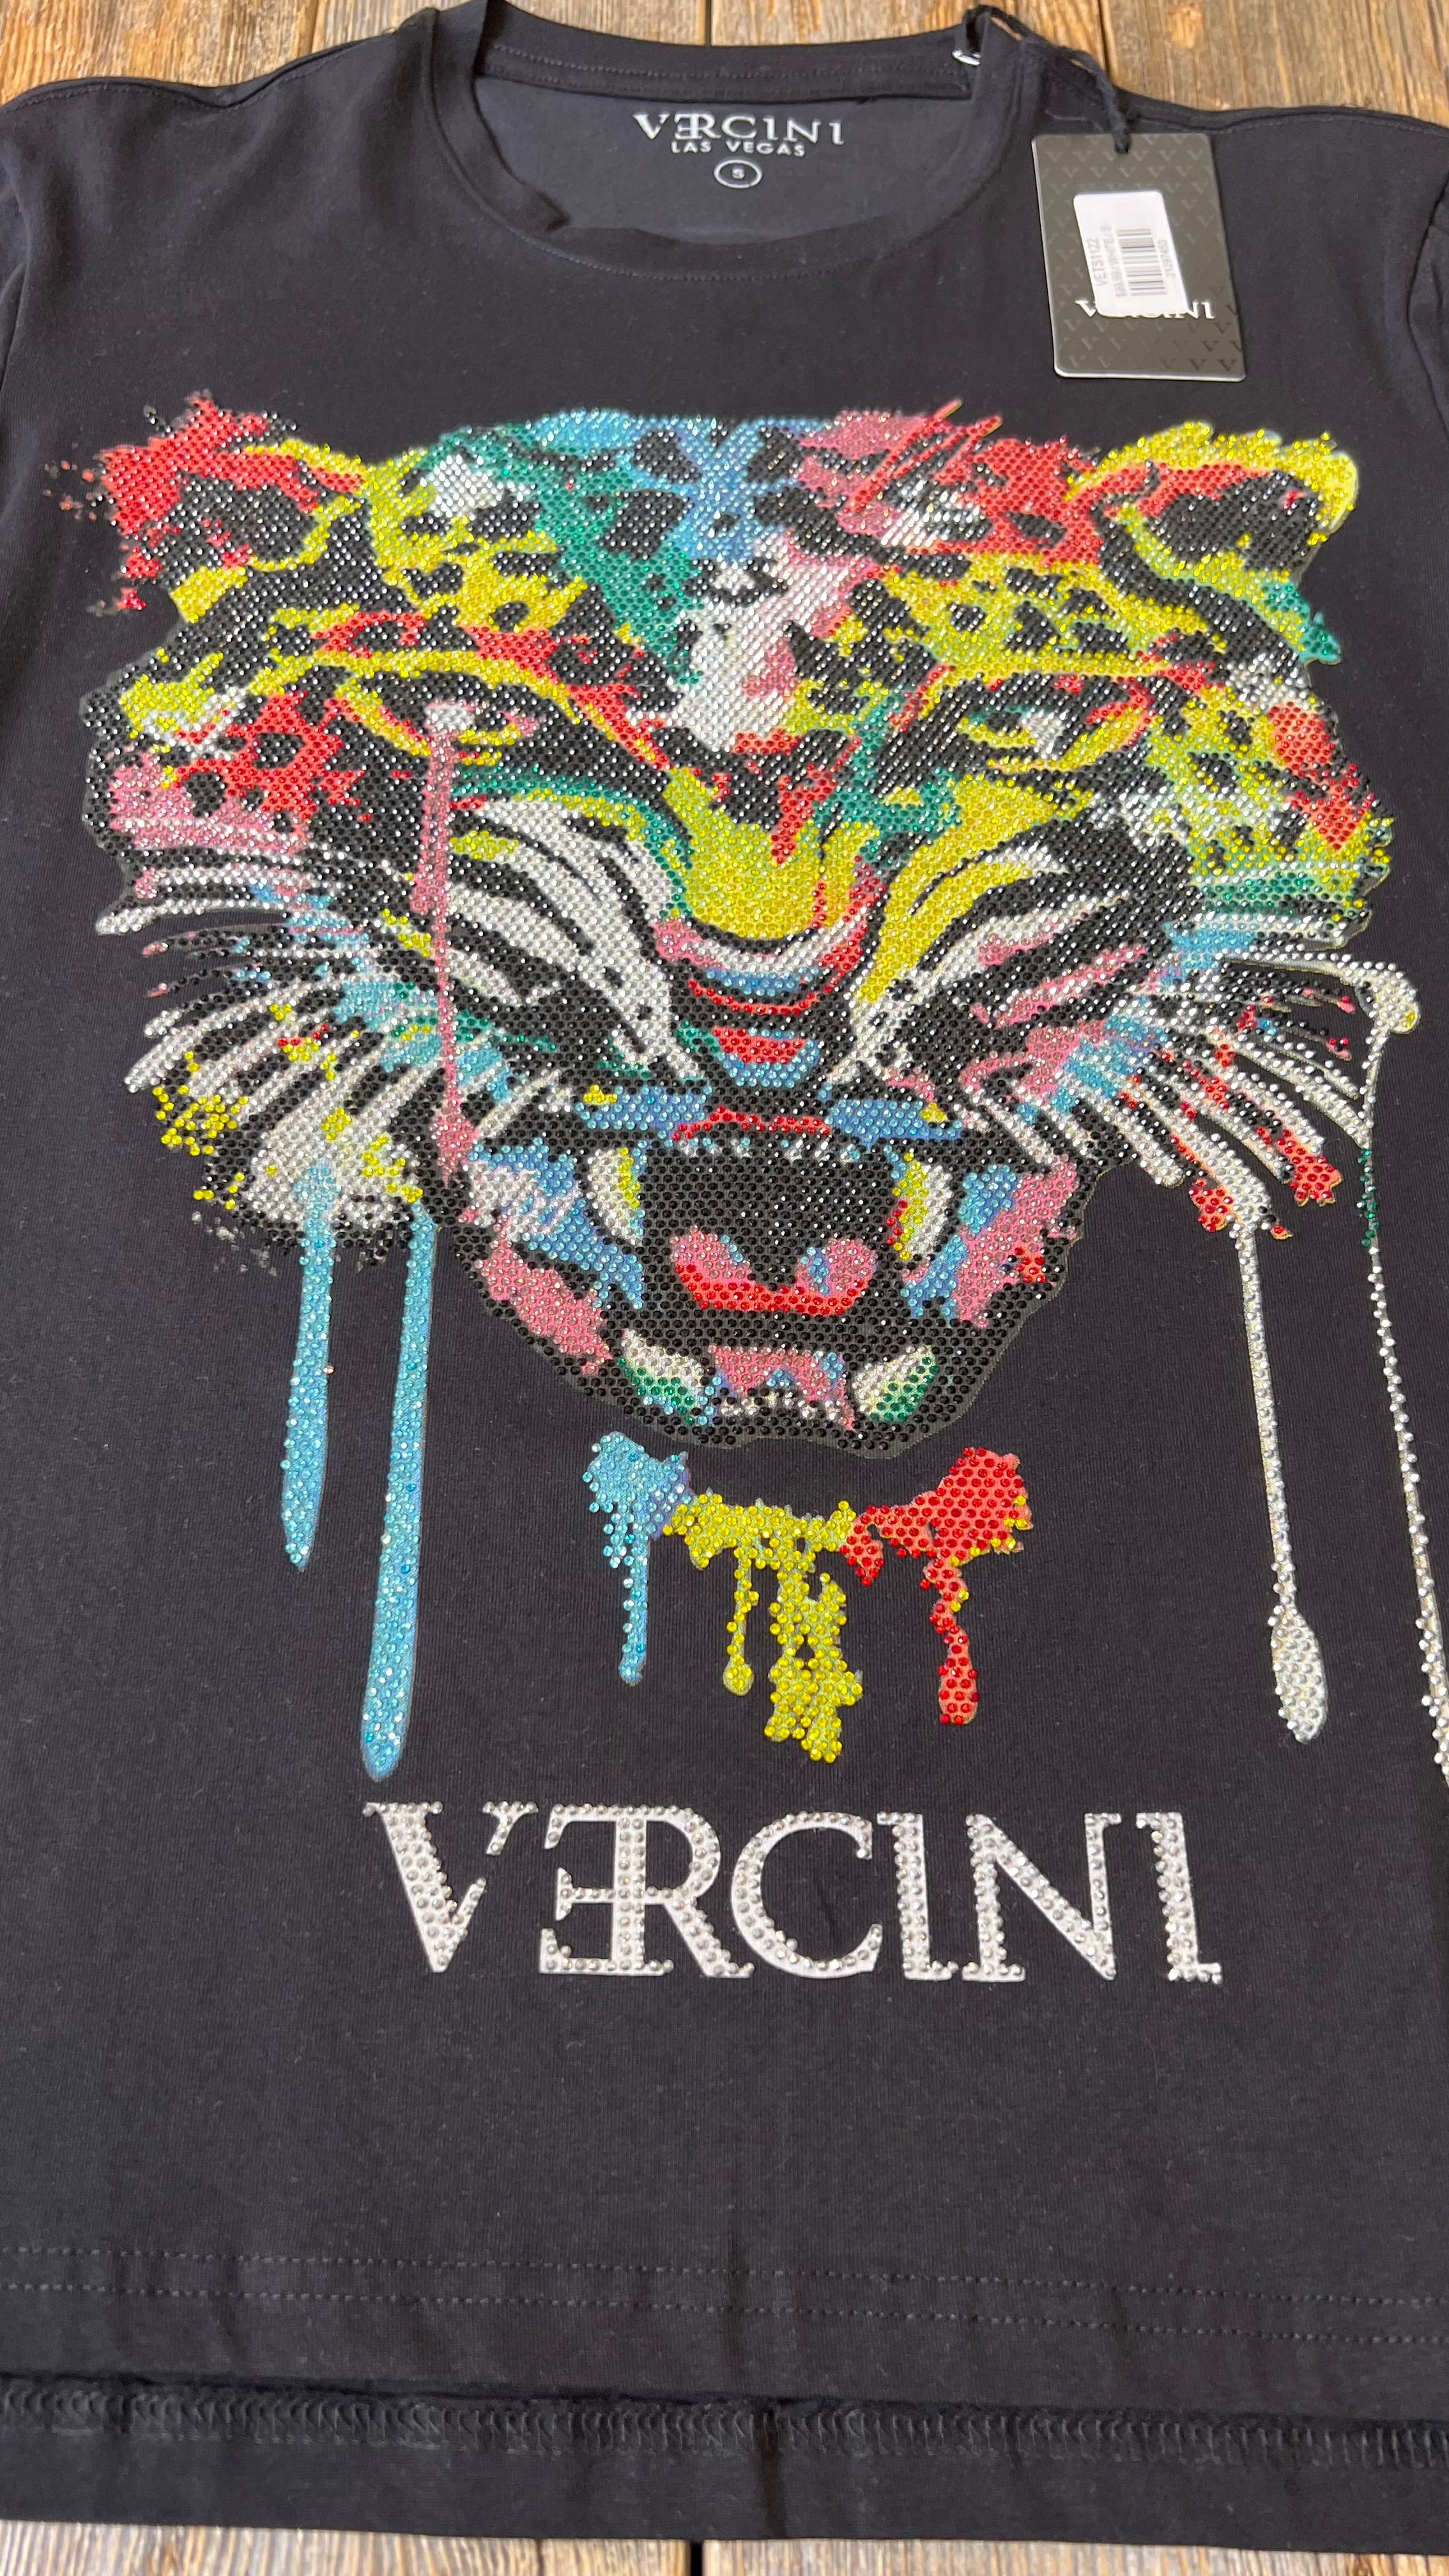 Urban Jungle Roar Graffiti Tiger T-Shirt